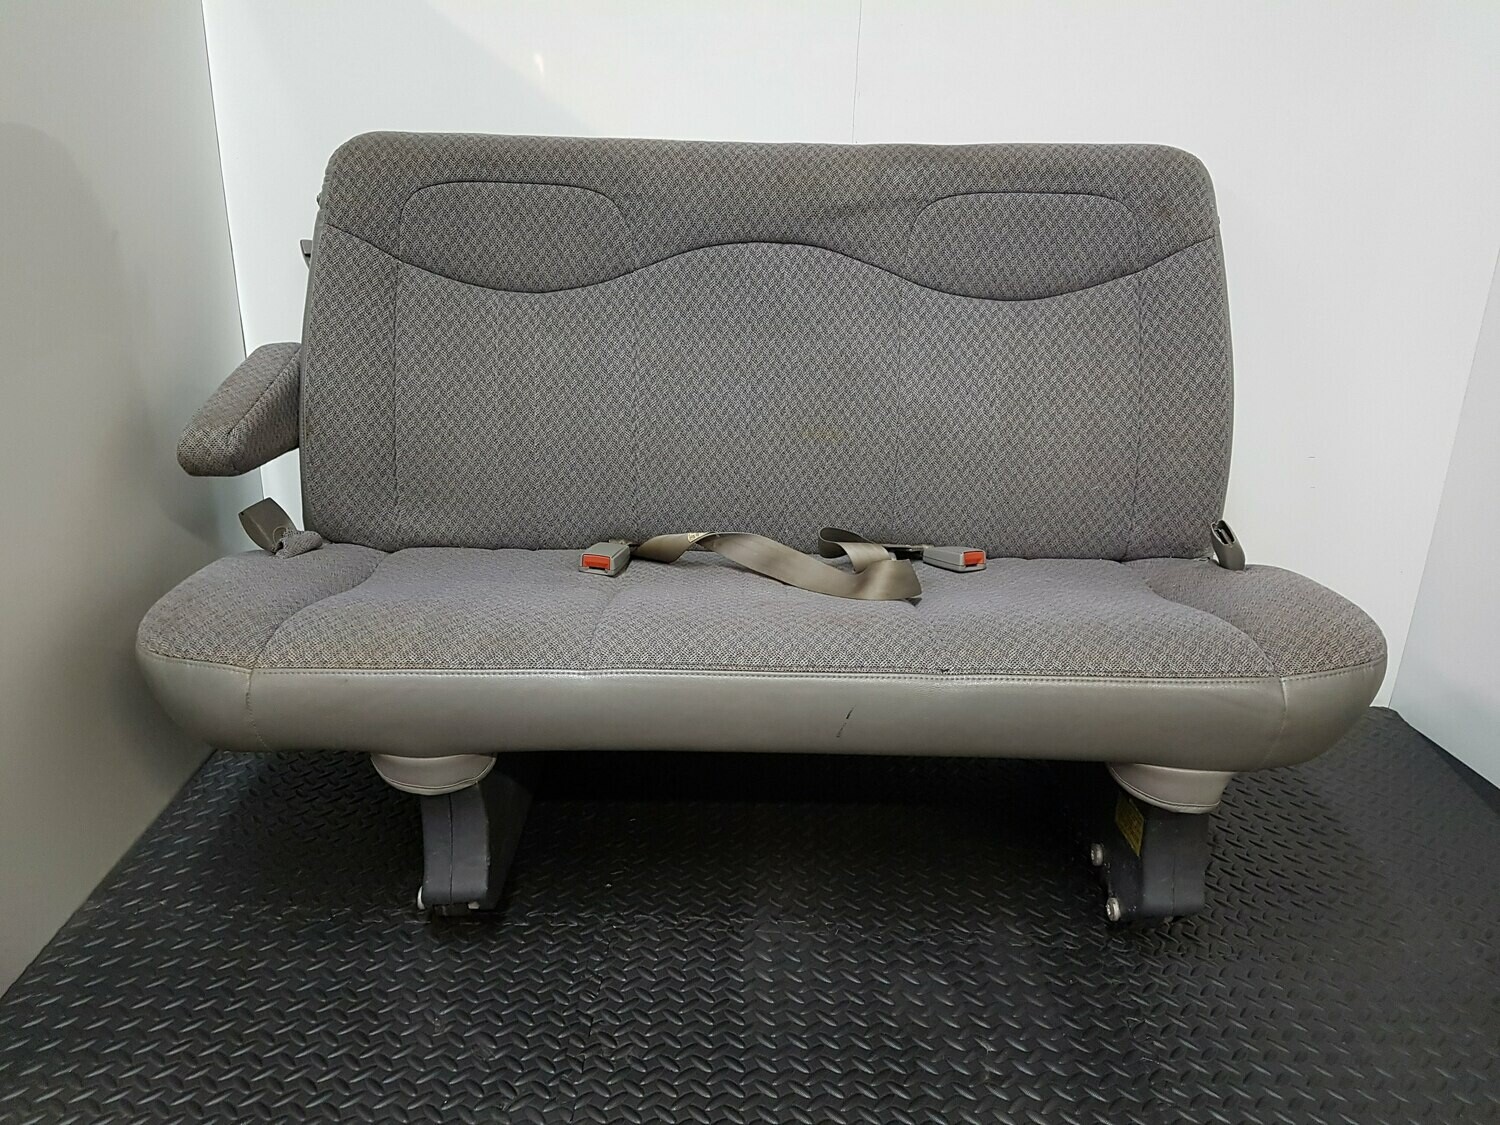 3 Passenger Bench Seat